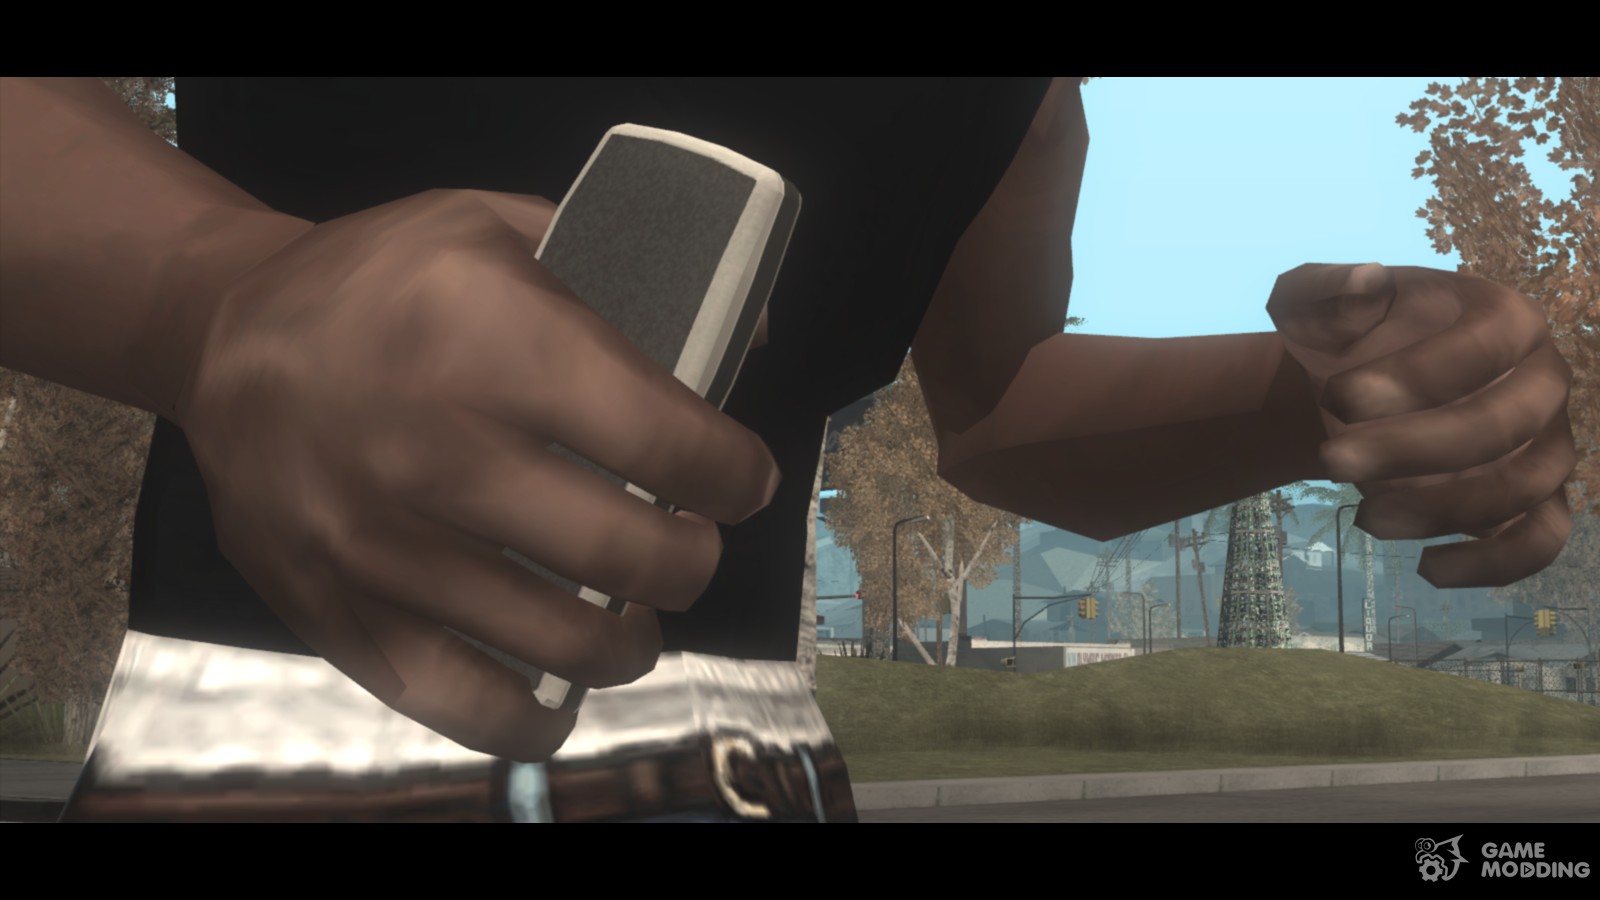 El teléfono móvil en GTA IV